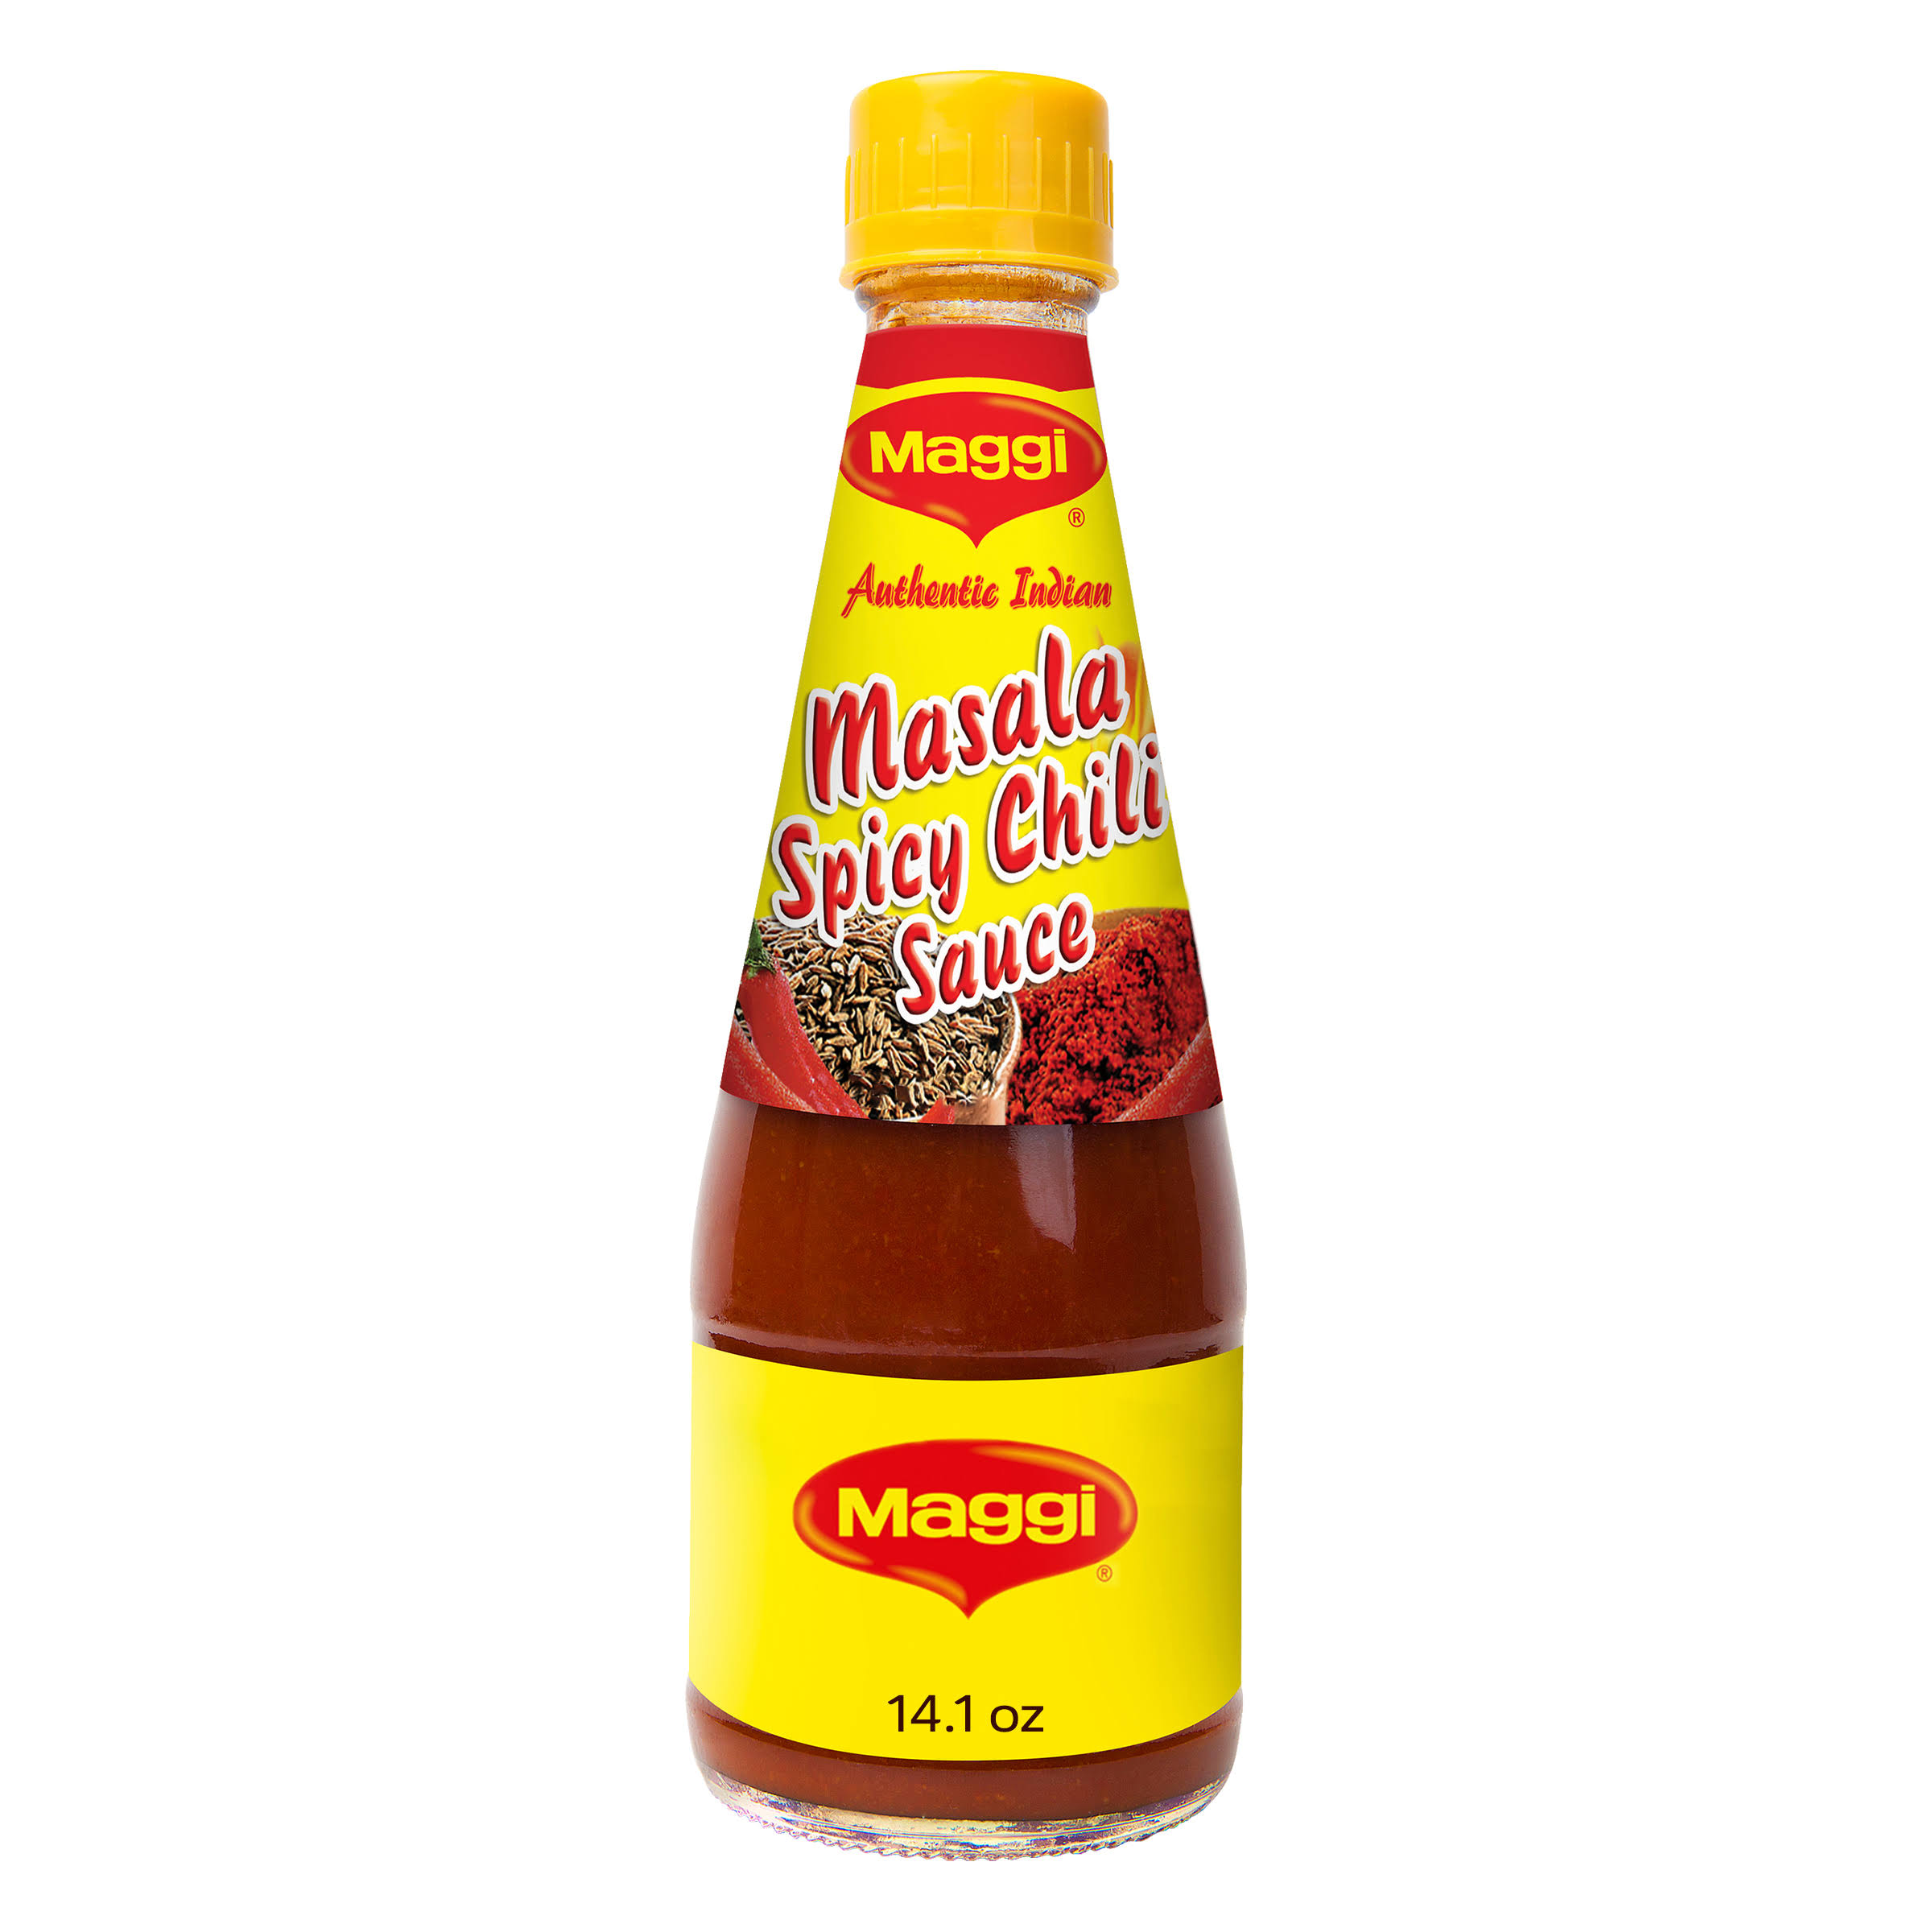 Maggi Masala Spicy Chilli Sauce - 11 oz